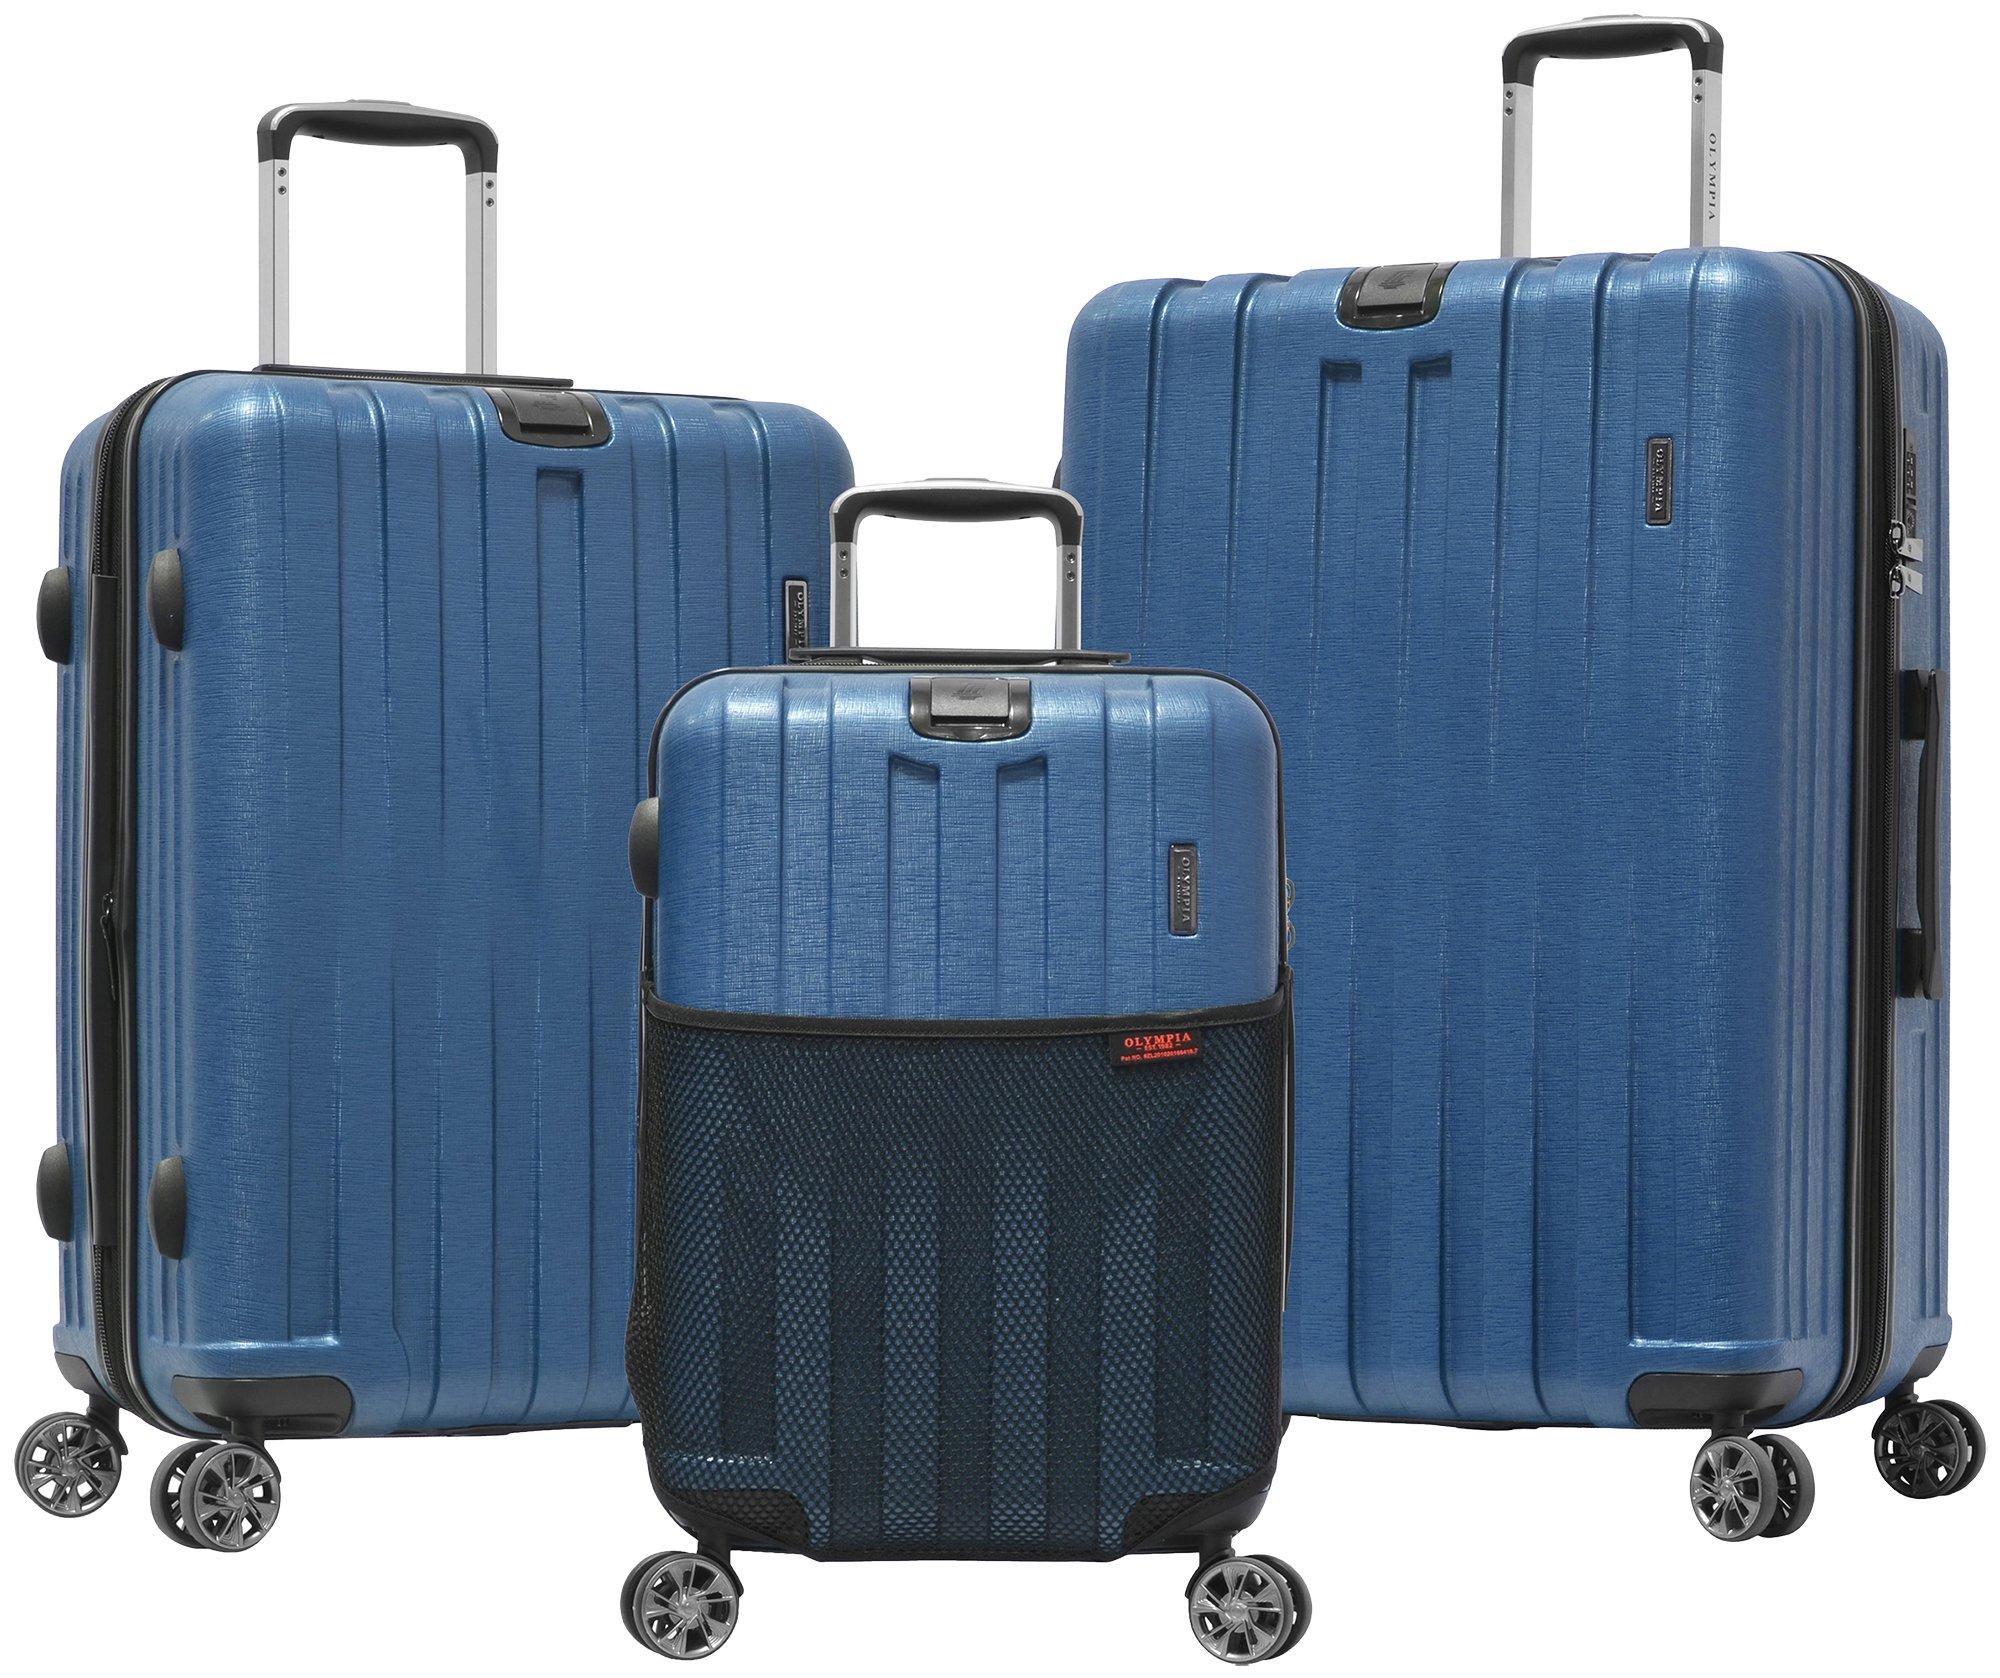 Olympia Luggage Sidewinder 3-pc. Hardside Luggage Set | Bealls Florida